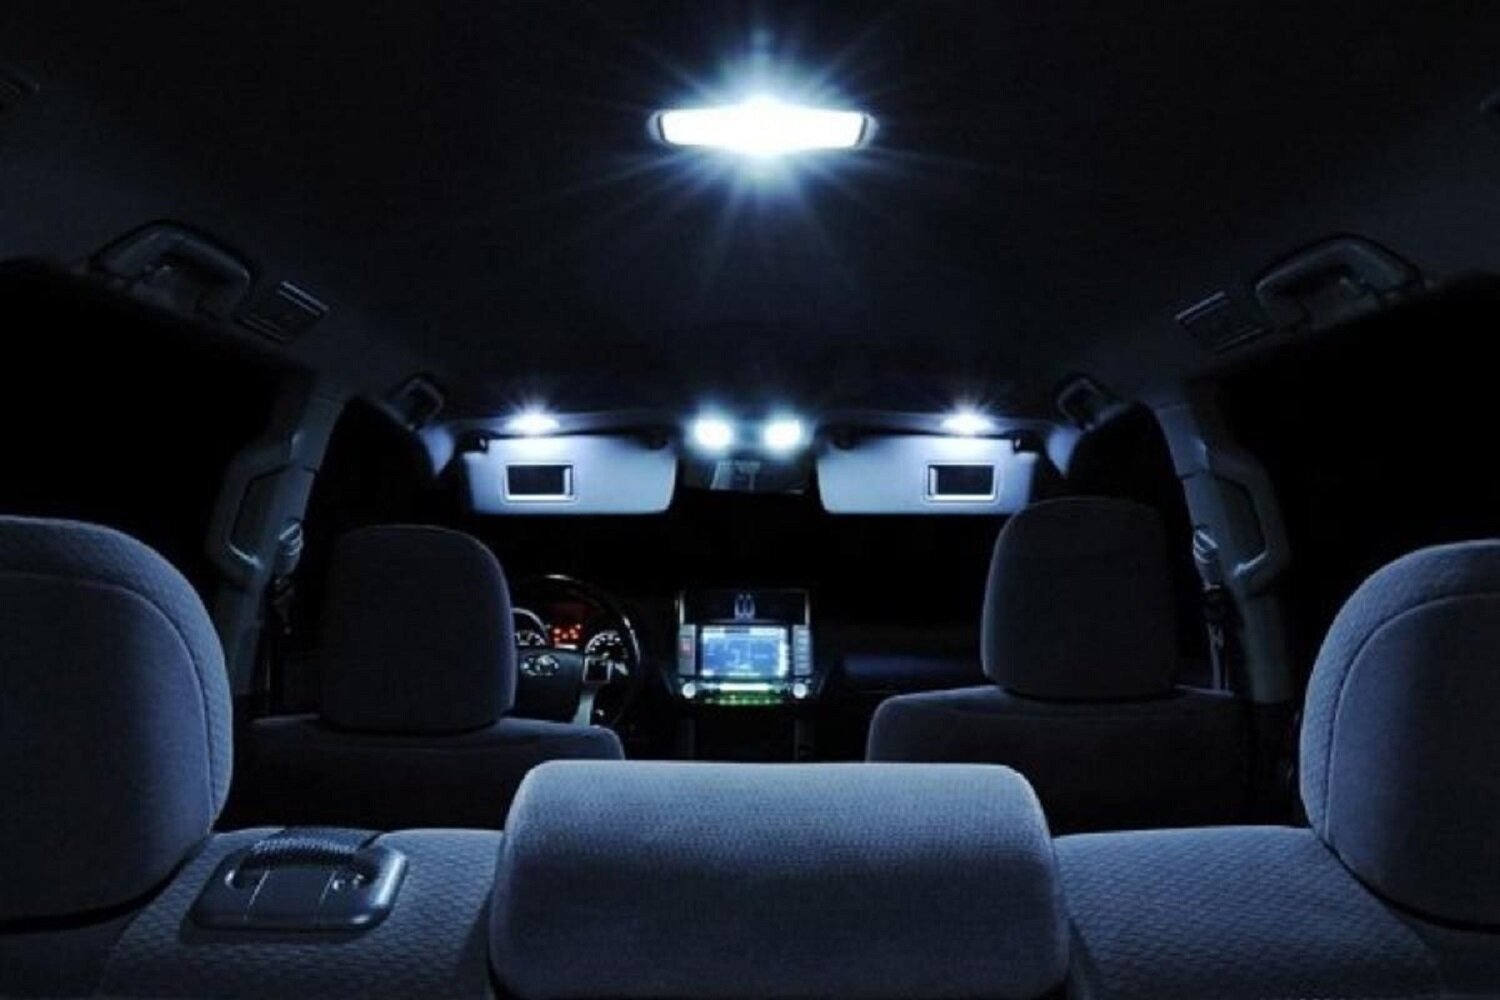 Đèn chiếu sáng nội thất xe ô tô. (Ảnh minh họa).